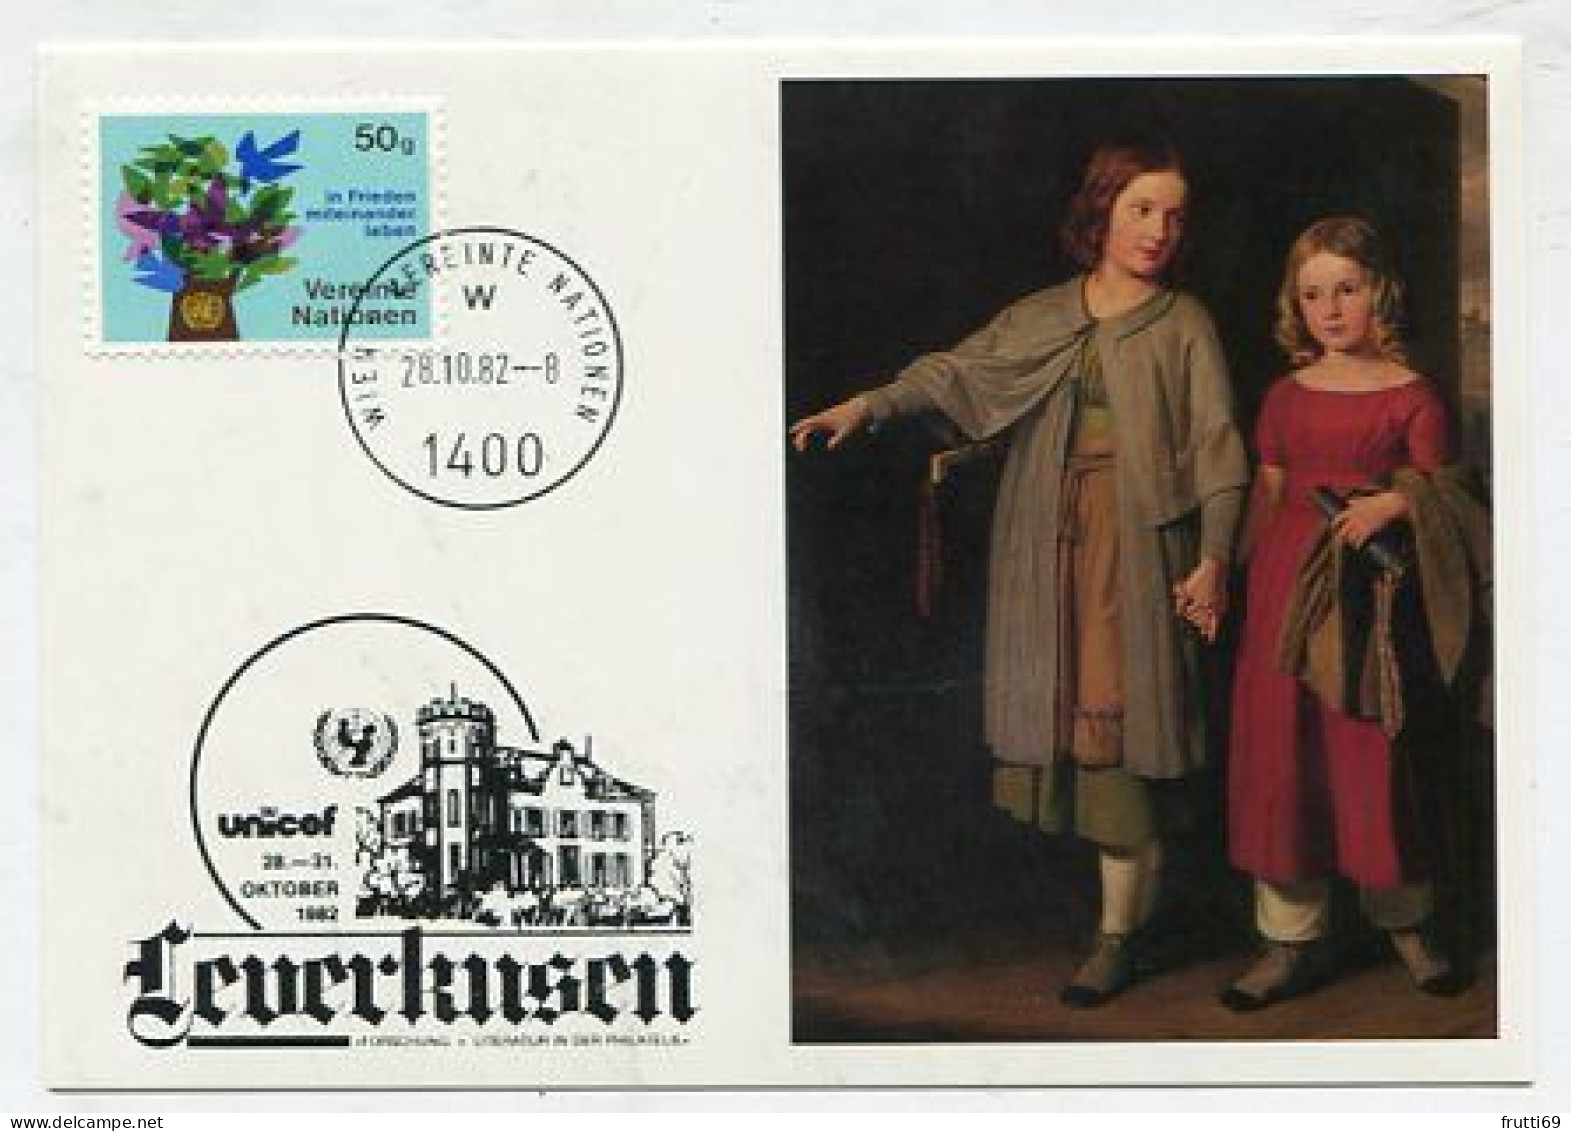 MC 145203 UNO VIENNA - 1982 - UNICEF Leverkusen 1982 - Maximumkarten